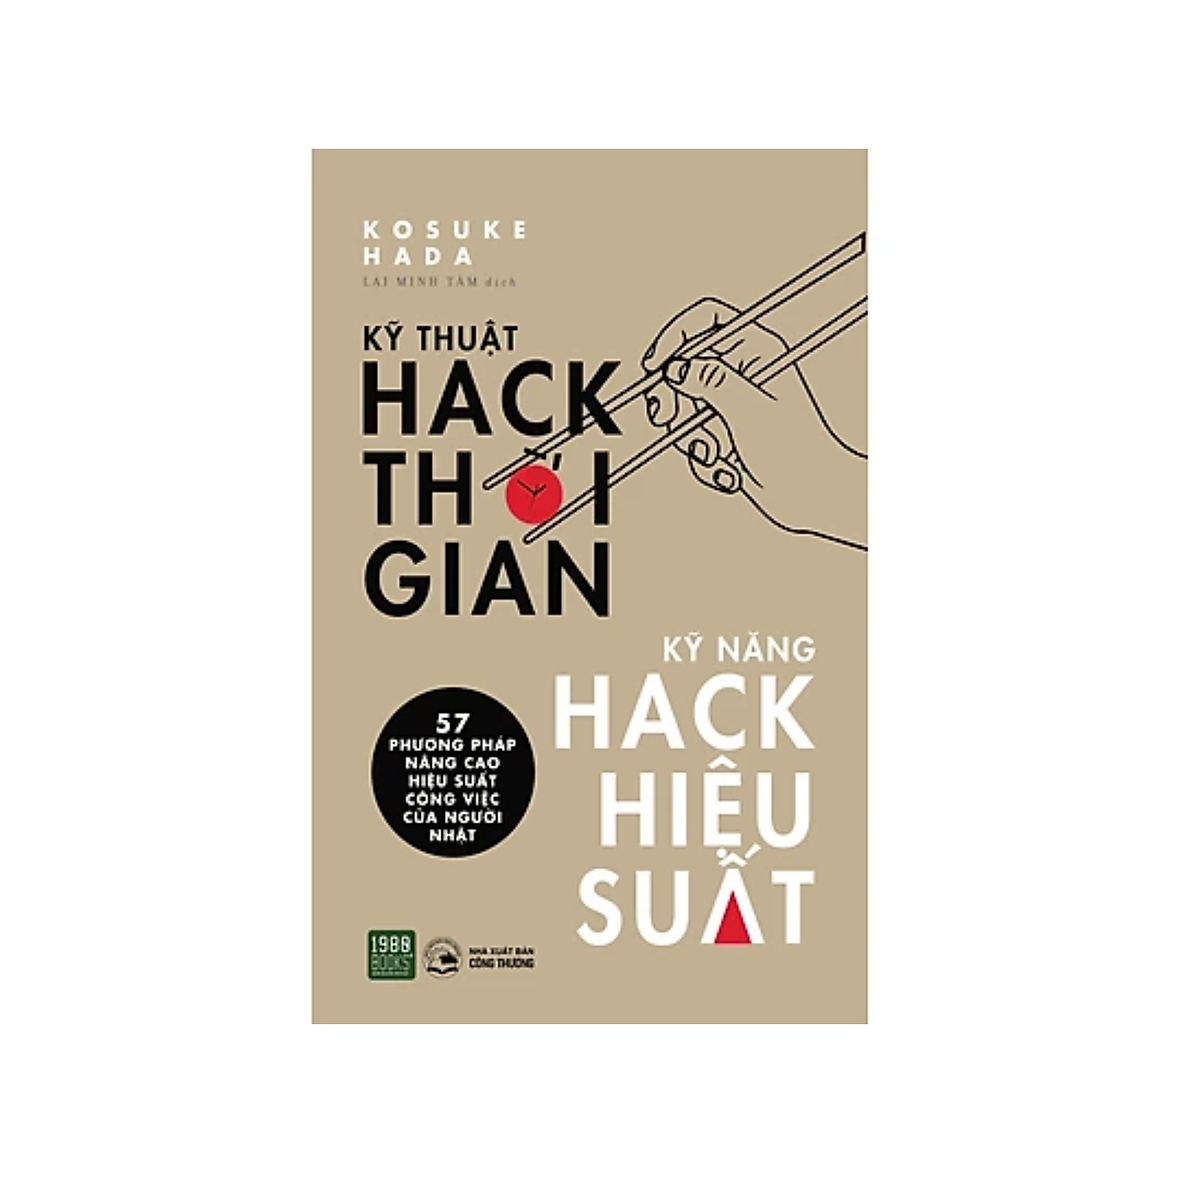 Kỹ Thuật Hack Thời Gian - Kỹ Năng Hack Hiệu Suất ebook PDF-EPUB-AWZ3-PRC-MOBI